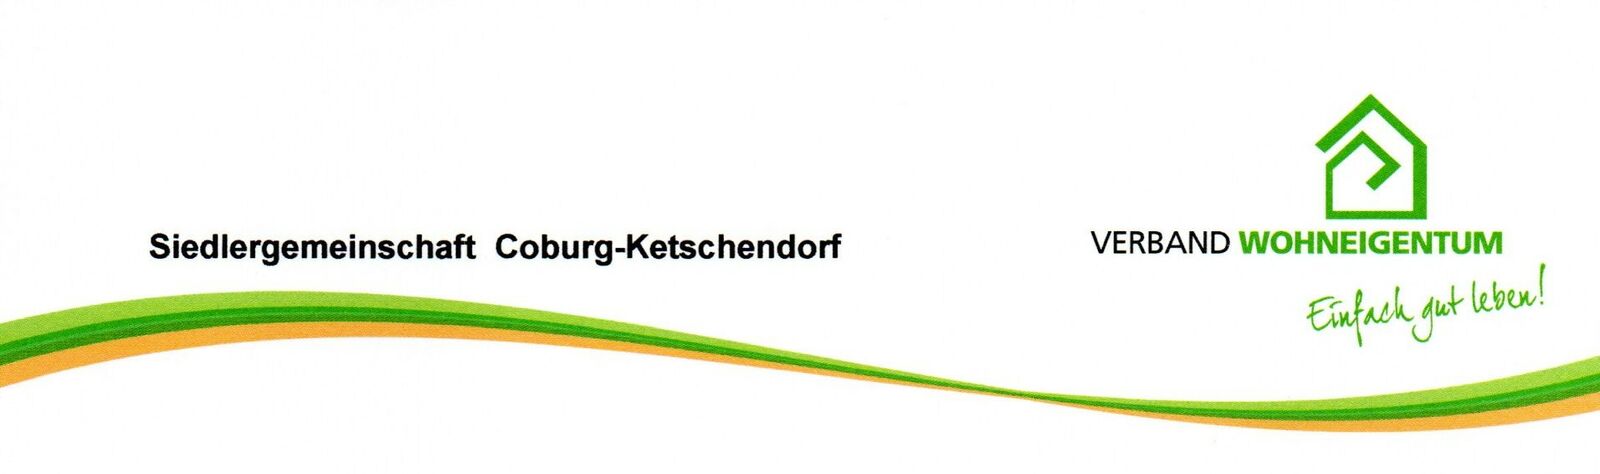 Briefkopf SG Cbg-Ketschendorf